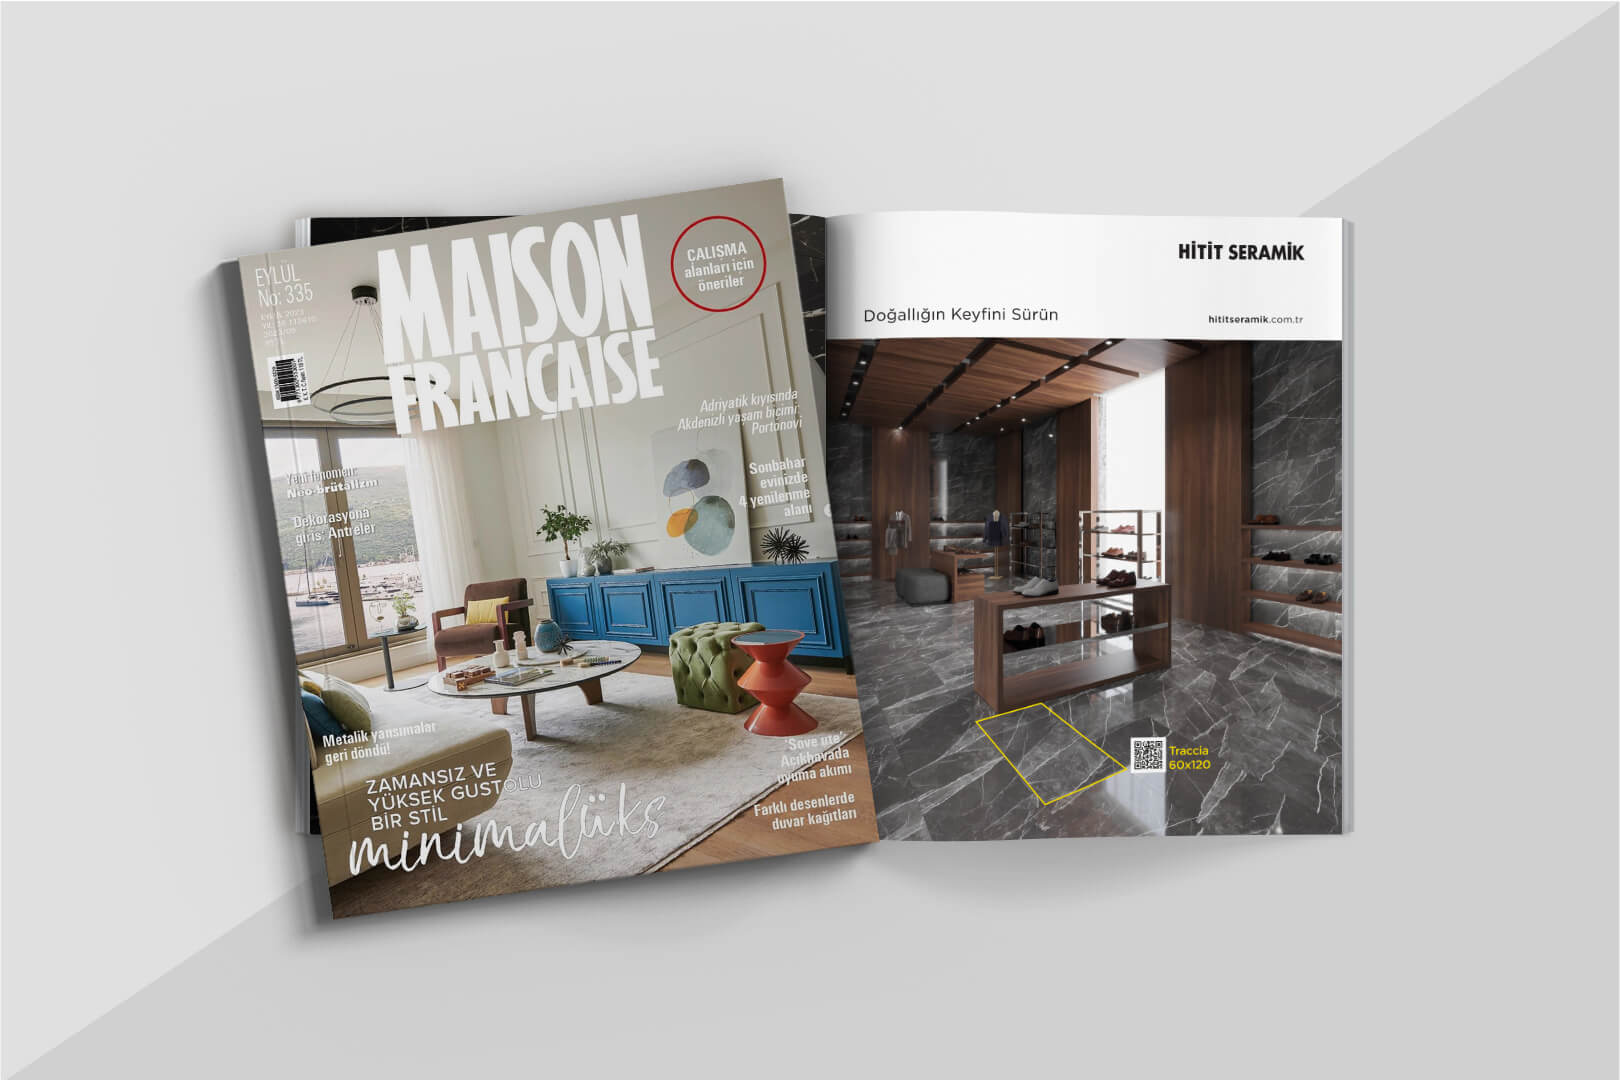 Maison Française Dergisi